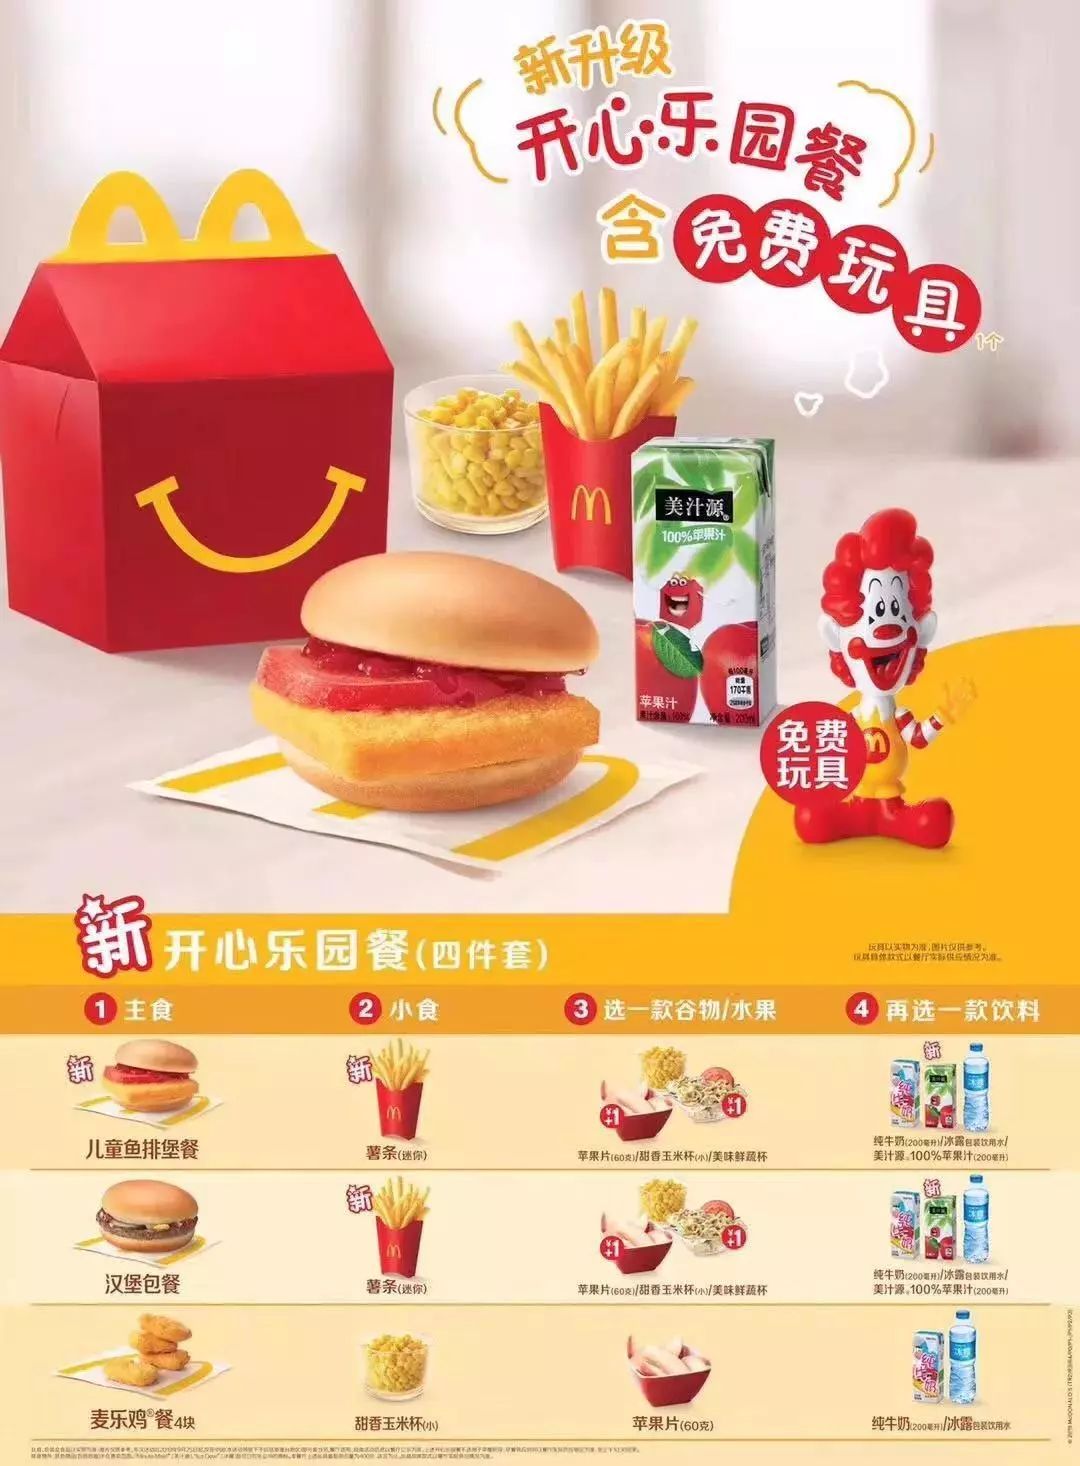 责任升级 自2015年起 麦当劳中国每售出一份开心乐园餐 就会捐出 0.